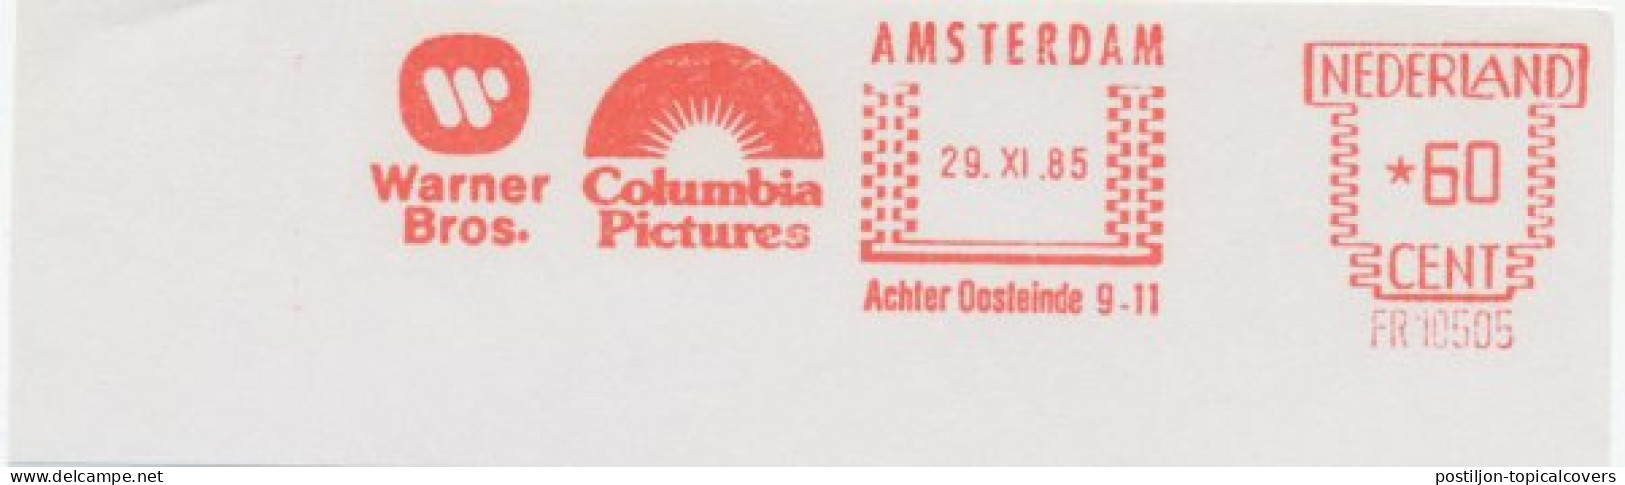 Meter Cut Netherlands 1985 Warner Bros. - Columbia Pictures - Film